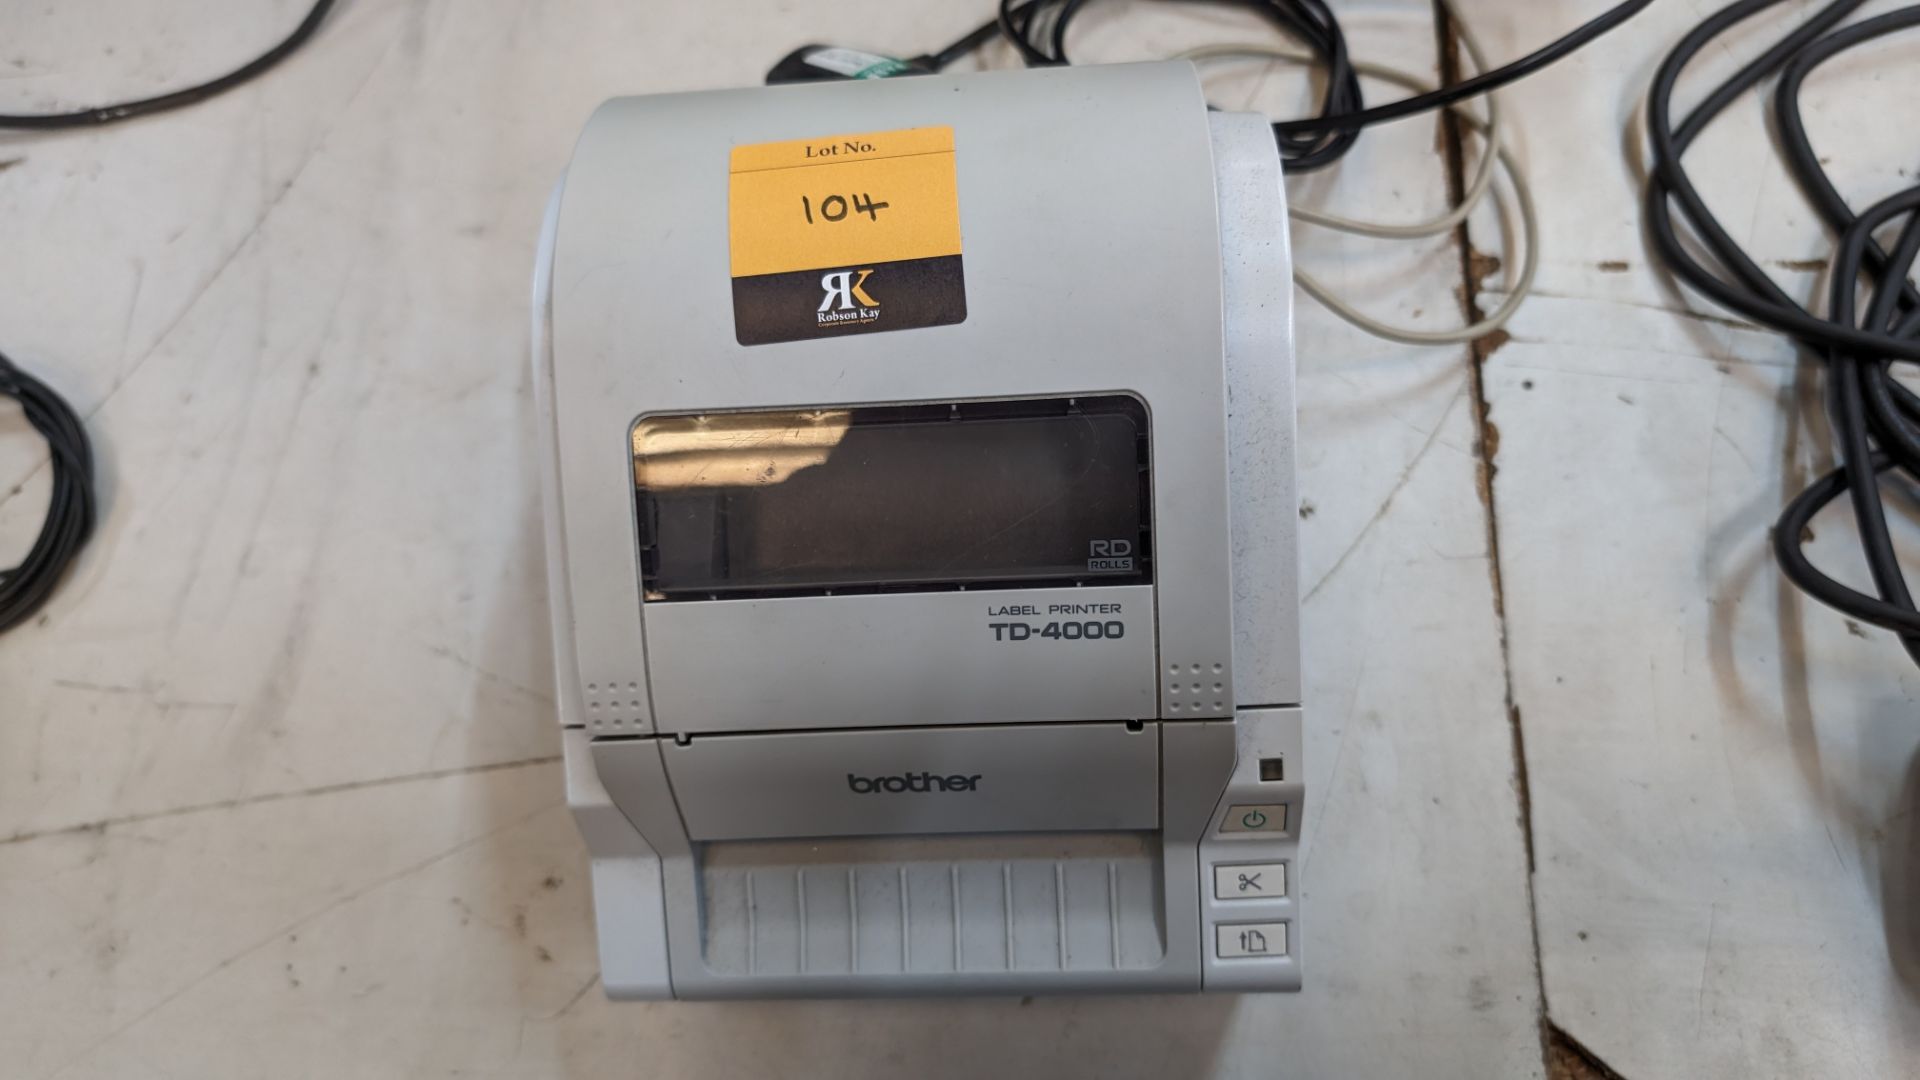 Brother label printer model TD-4000 - Image 4 of 8